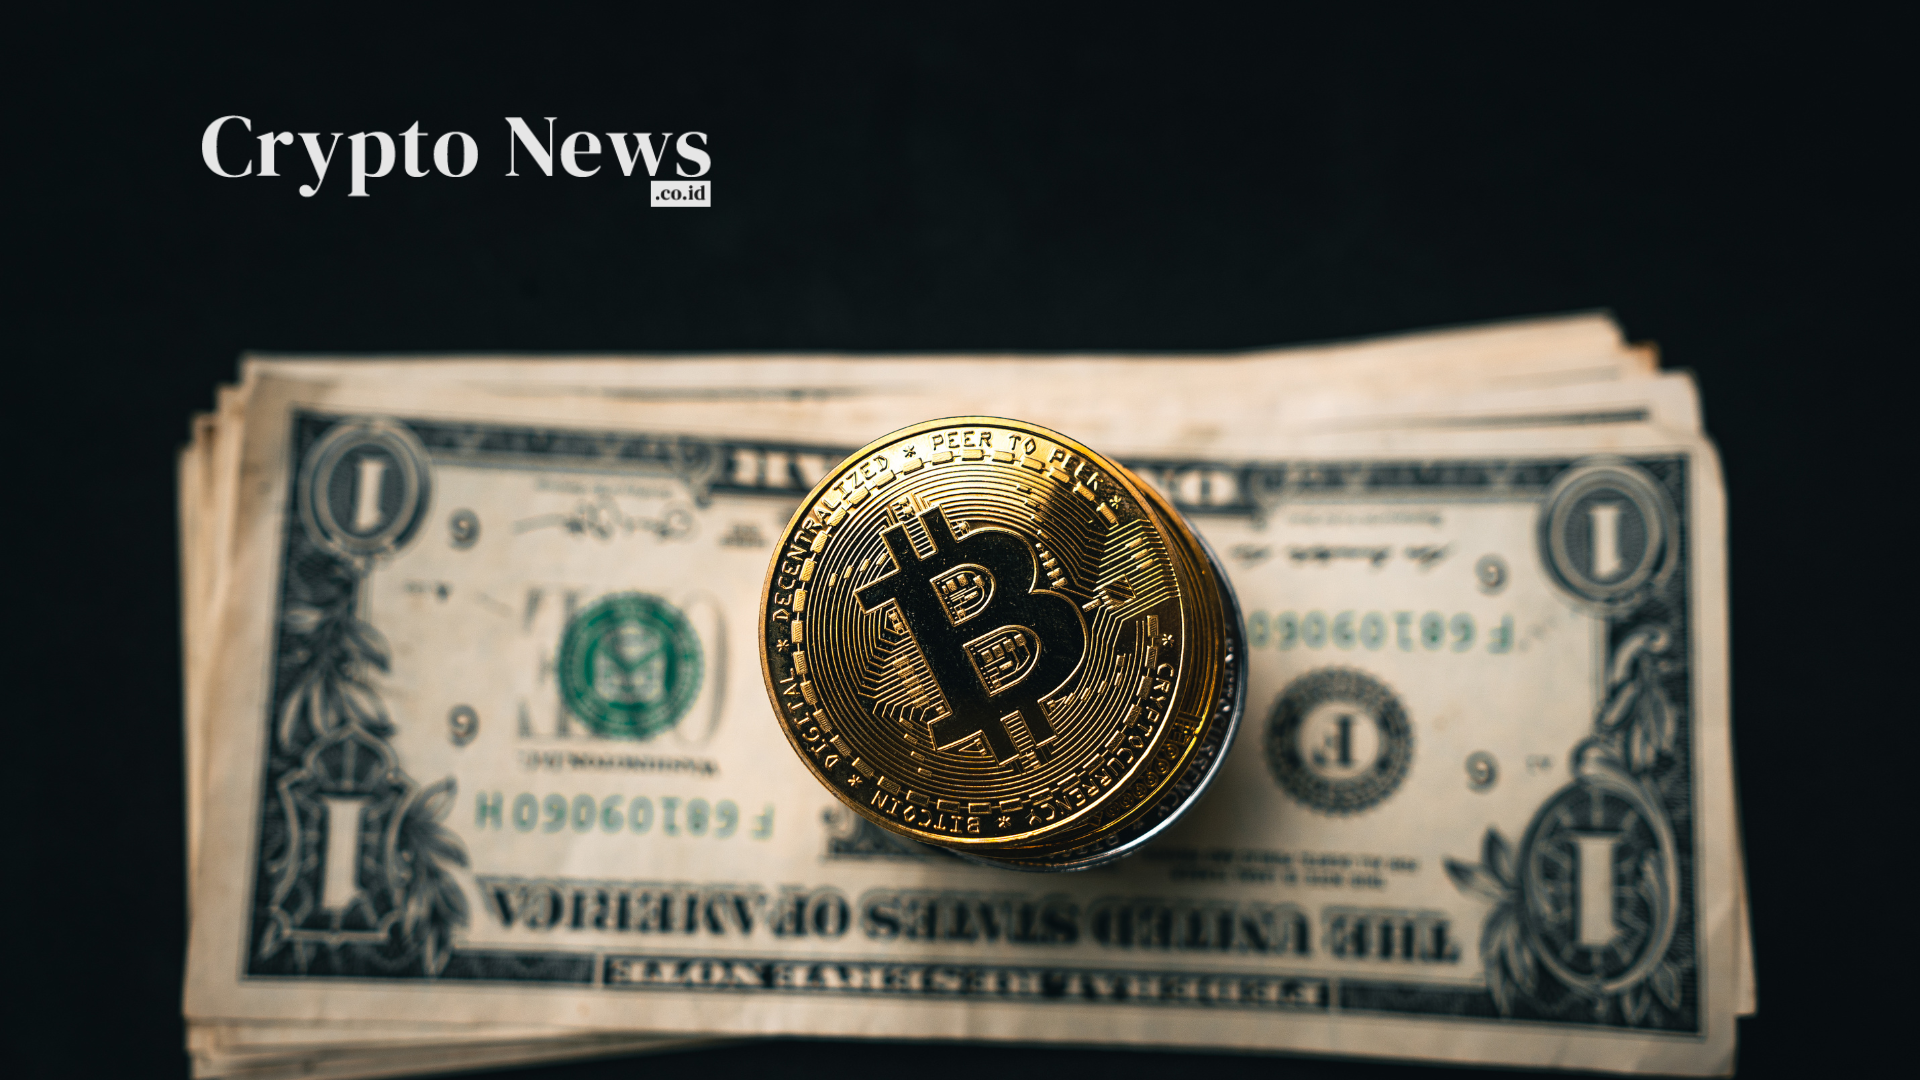 Crypto news indonesia, situs berita cryptocurrency & blockchain - robert kennedy jr berencana mendukung dolar as dengan bitcoin